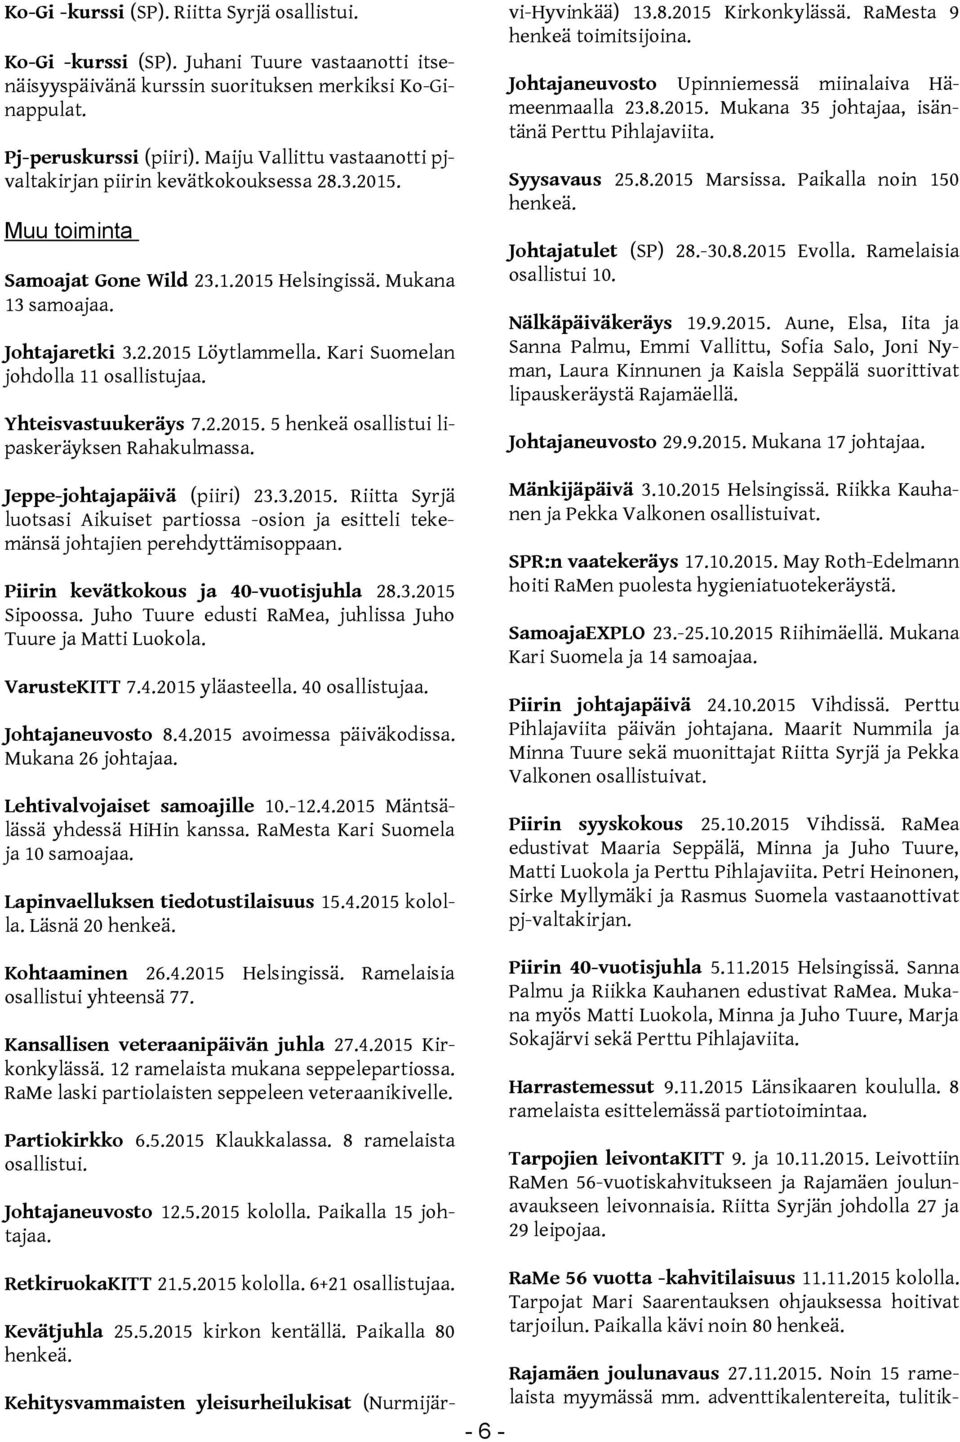 Mukana 35 johtajaa, isäntänä Perttu Pihlajaviita. Pj-peruskurssi (piiri). Maiju Vallittu vastaanotti pjvaltakirjan piirin kevätkokouksessa 28.3.2015. Syysavaus 25.8.2015 Marsissa.